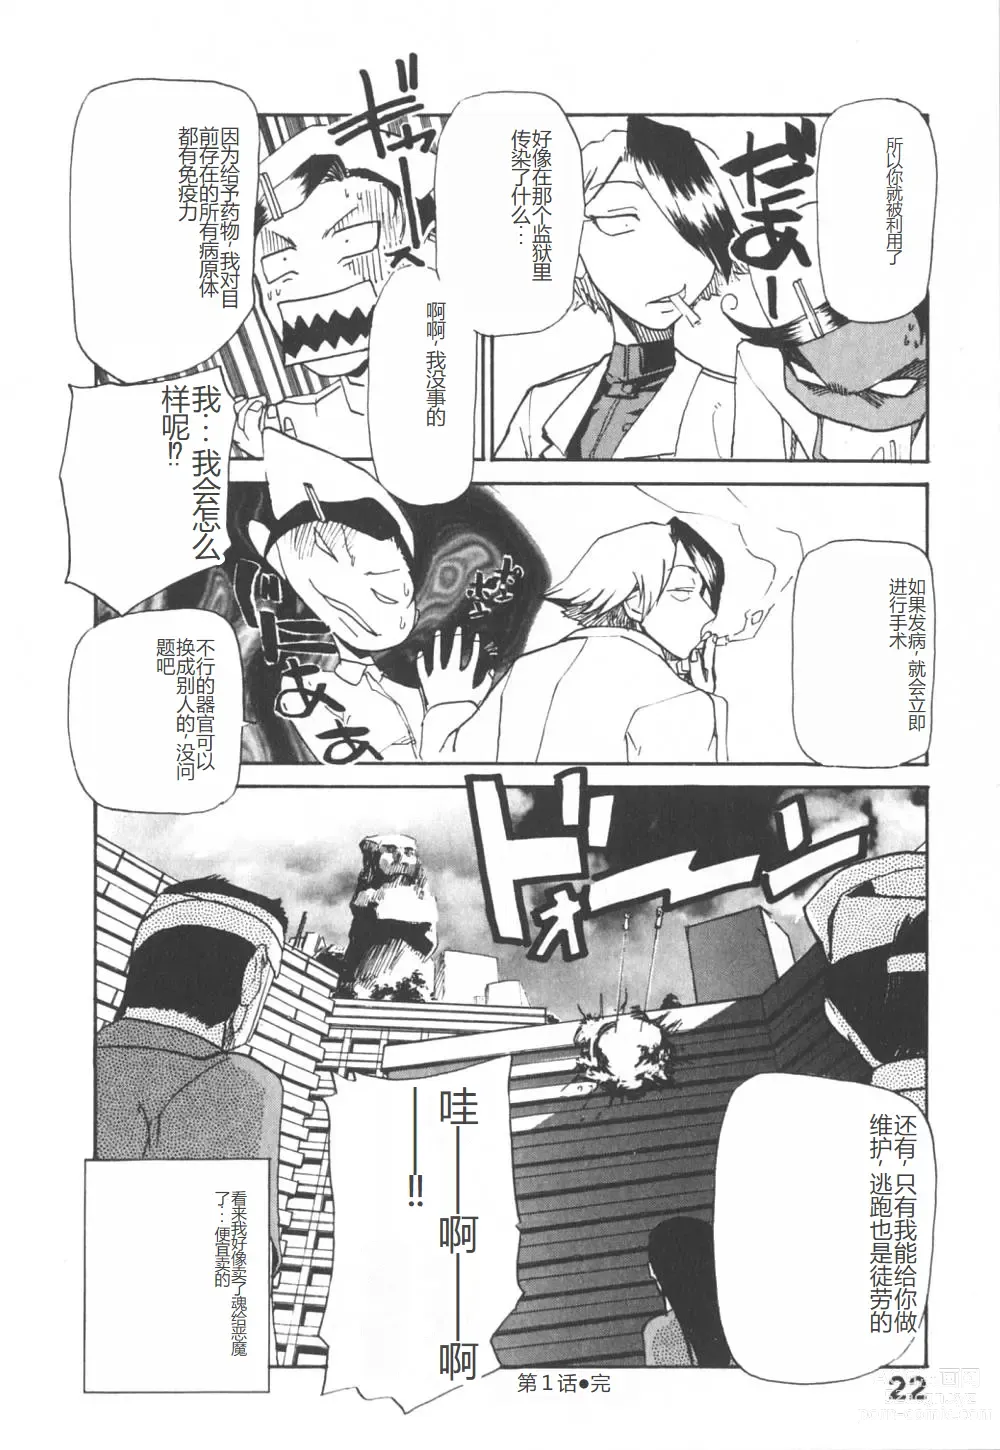 Page 27 of manga 去医院吧!!